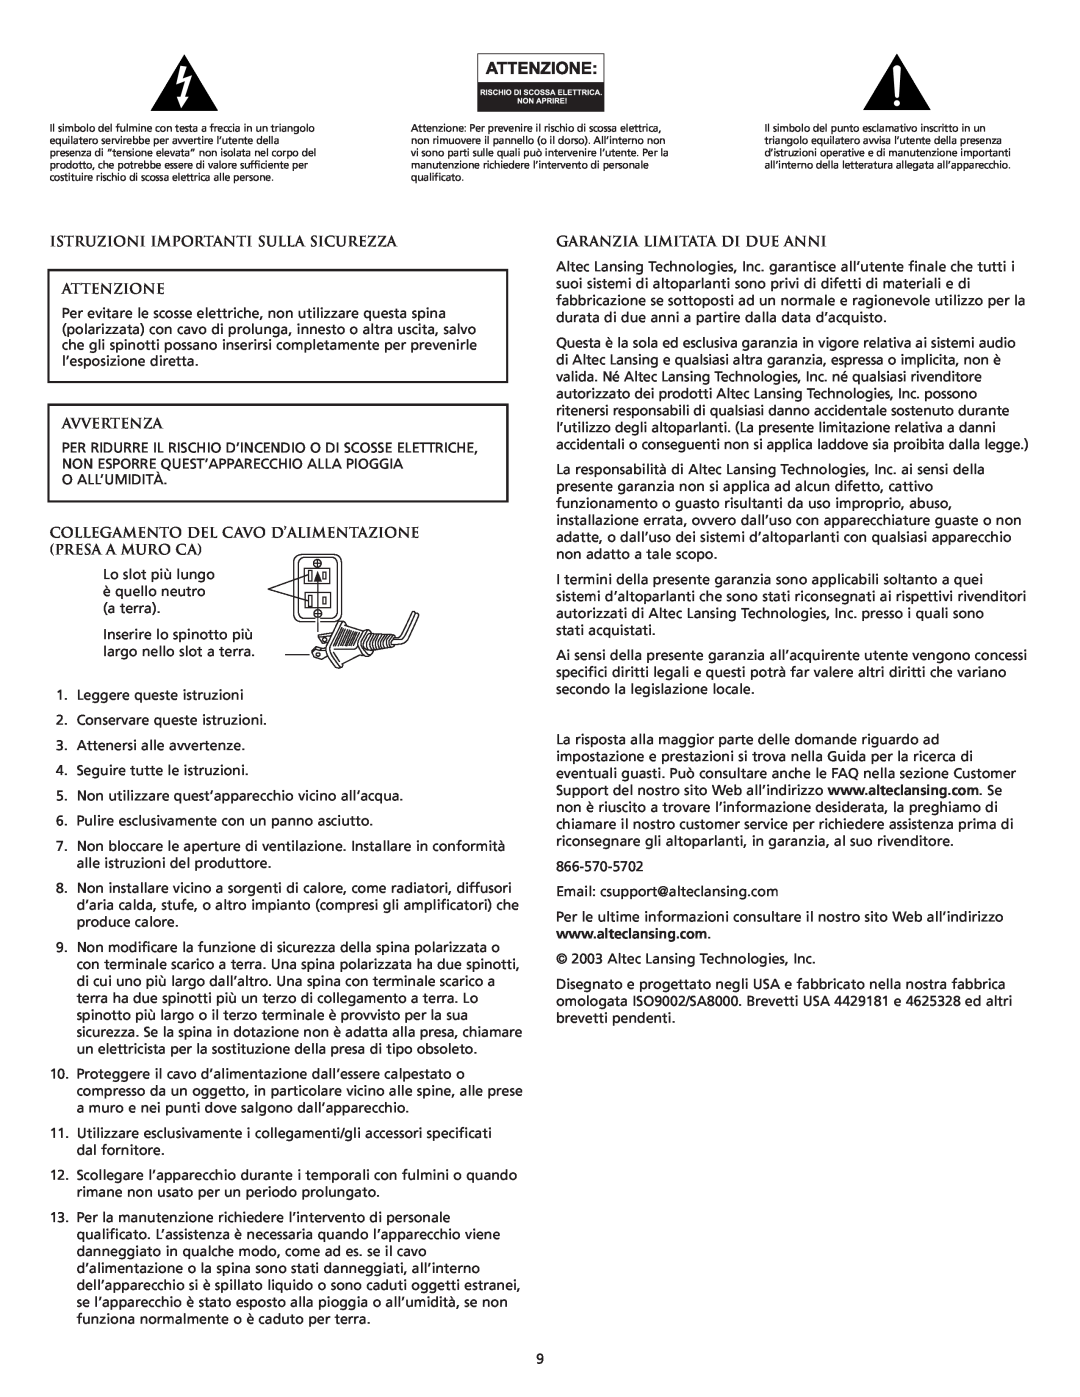 Altec Lansing FX6021 manual Istruzioni Importanti Sulla Sicurezza Attenzione, Avvertenza, Garanzia Limitata Di Due Anni 